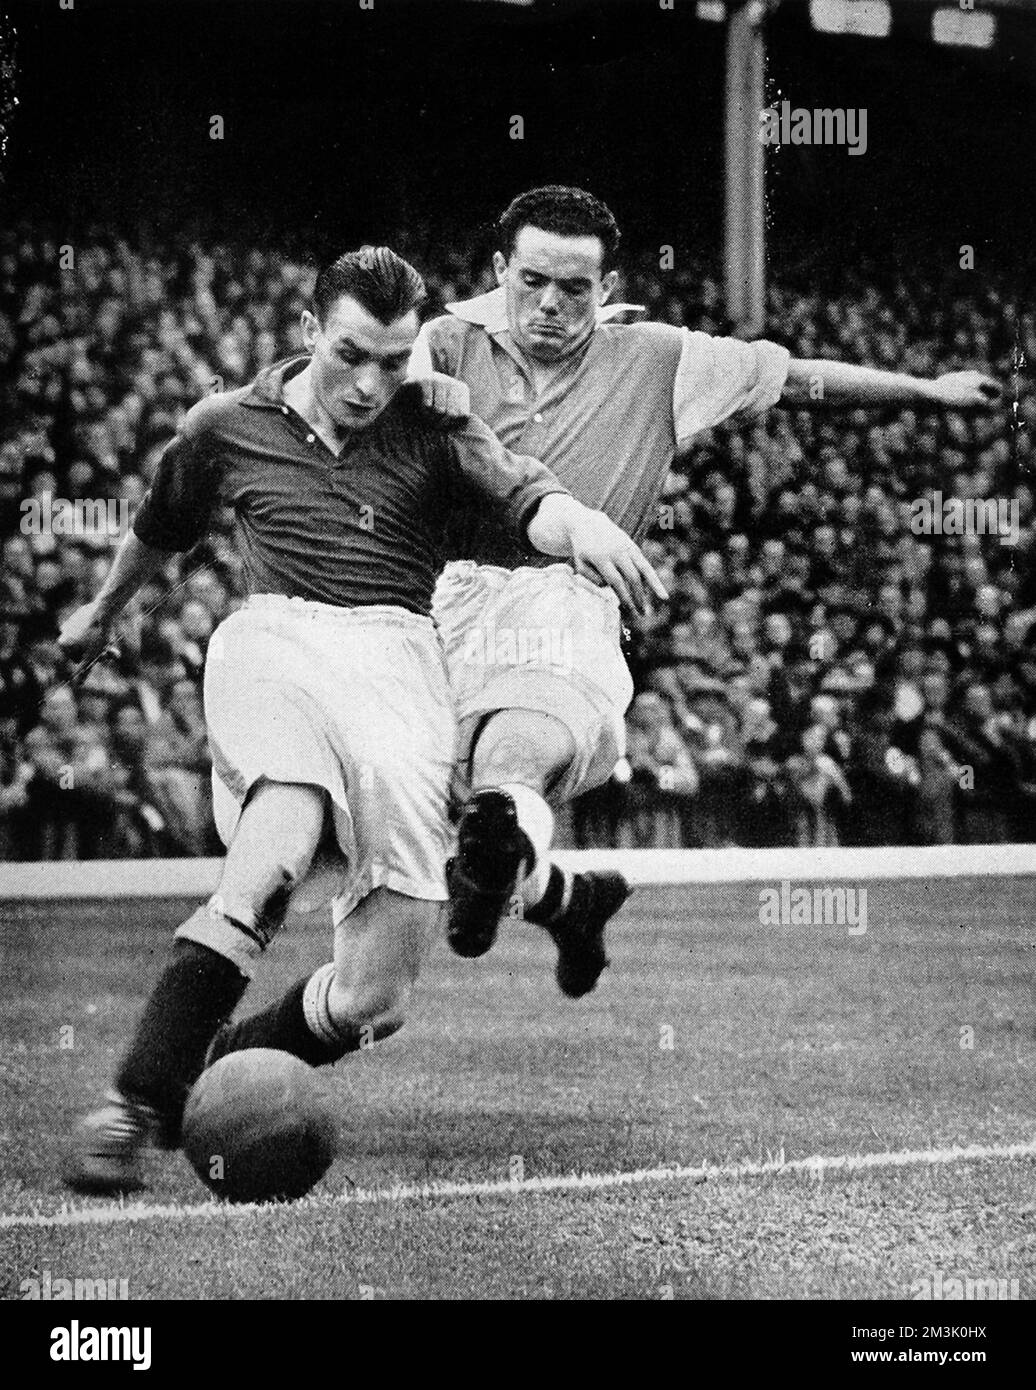 Bryn Jones d'Arsenal (à droite) s'attaquant à Gillick d'Everton, lors du match de première division joué à Highbury, Londres, septembre 1938. Jones a marqué pour Arsenal, mais Everton a gagné 2-1. Date: 1938 Banque D'Images